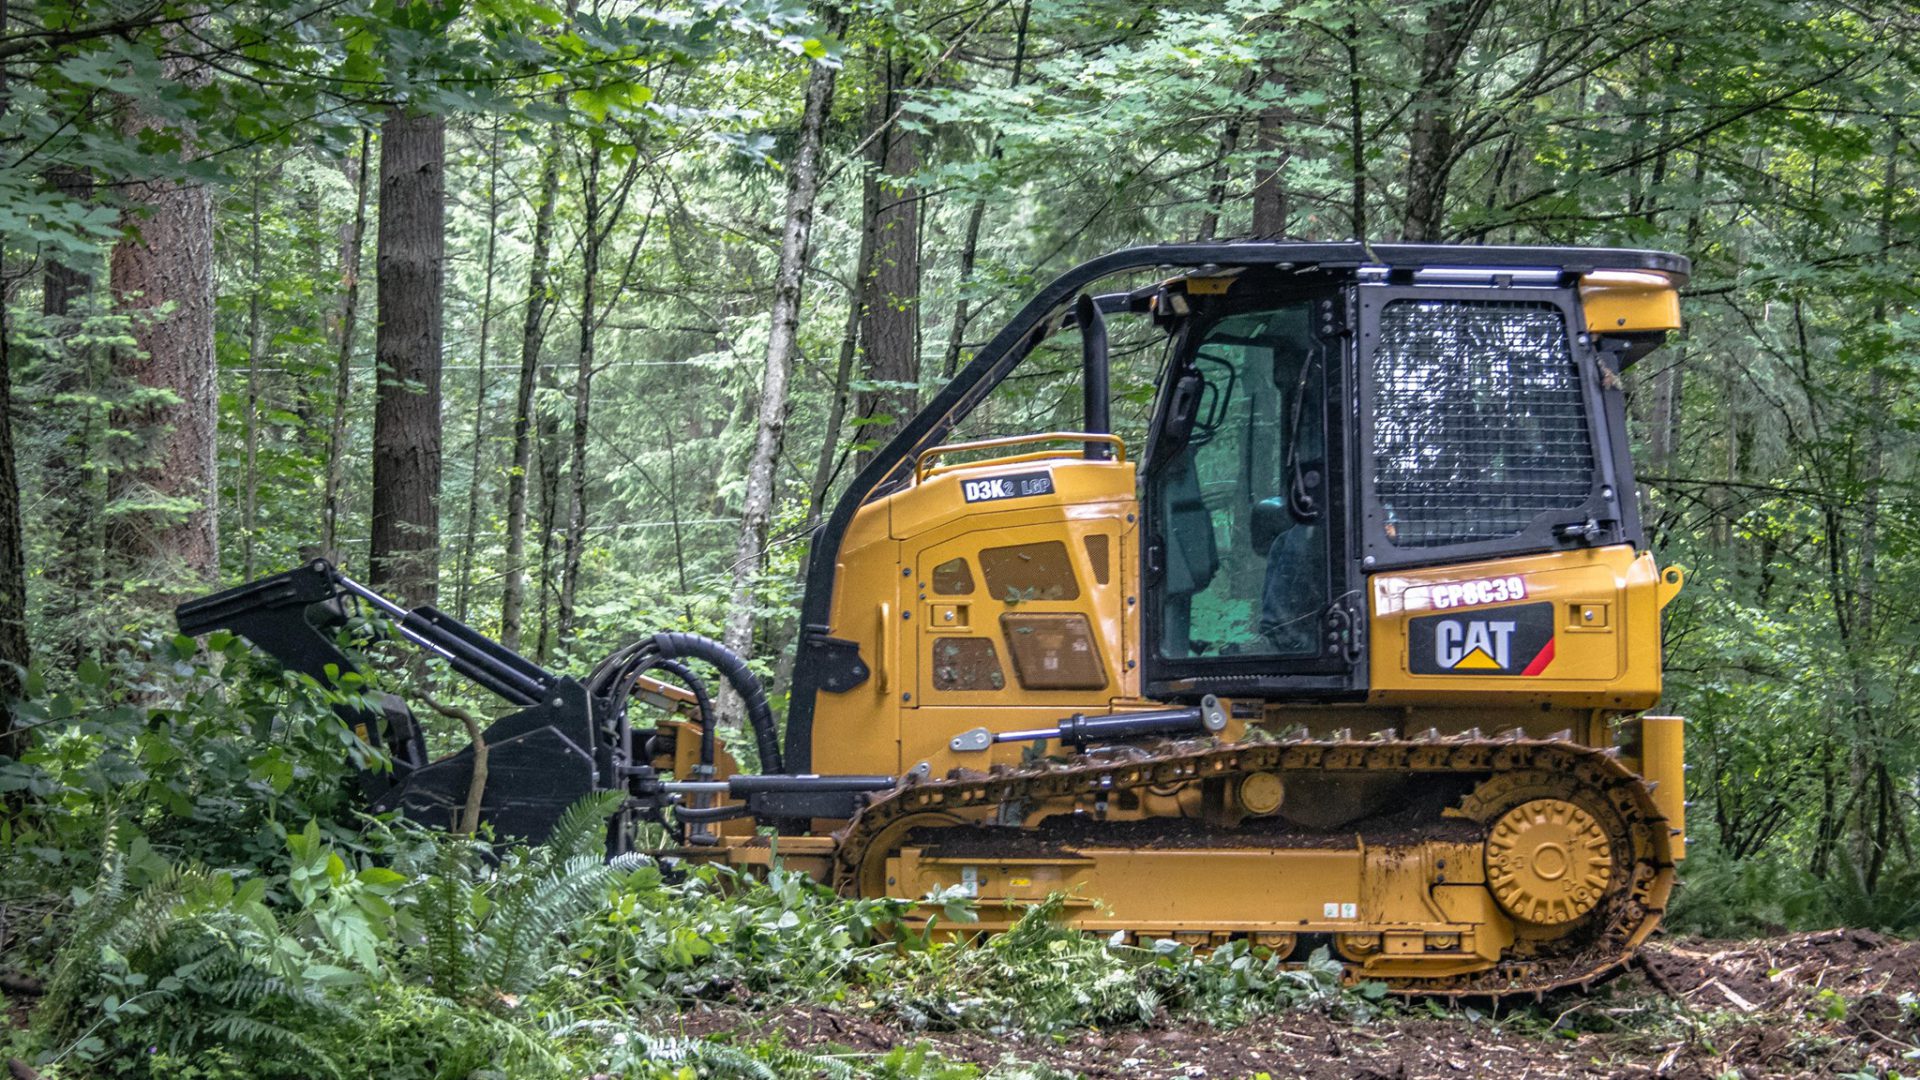 Il settore forestale vuole macchine performanti